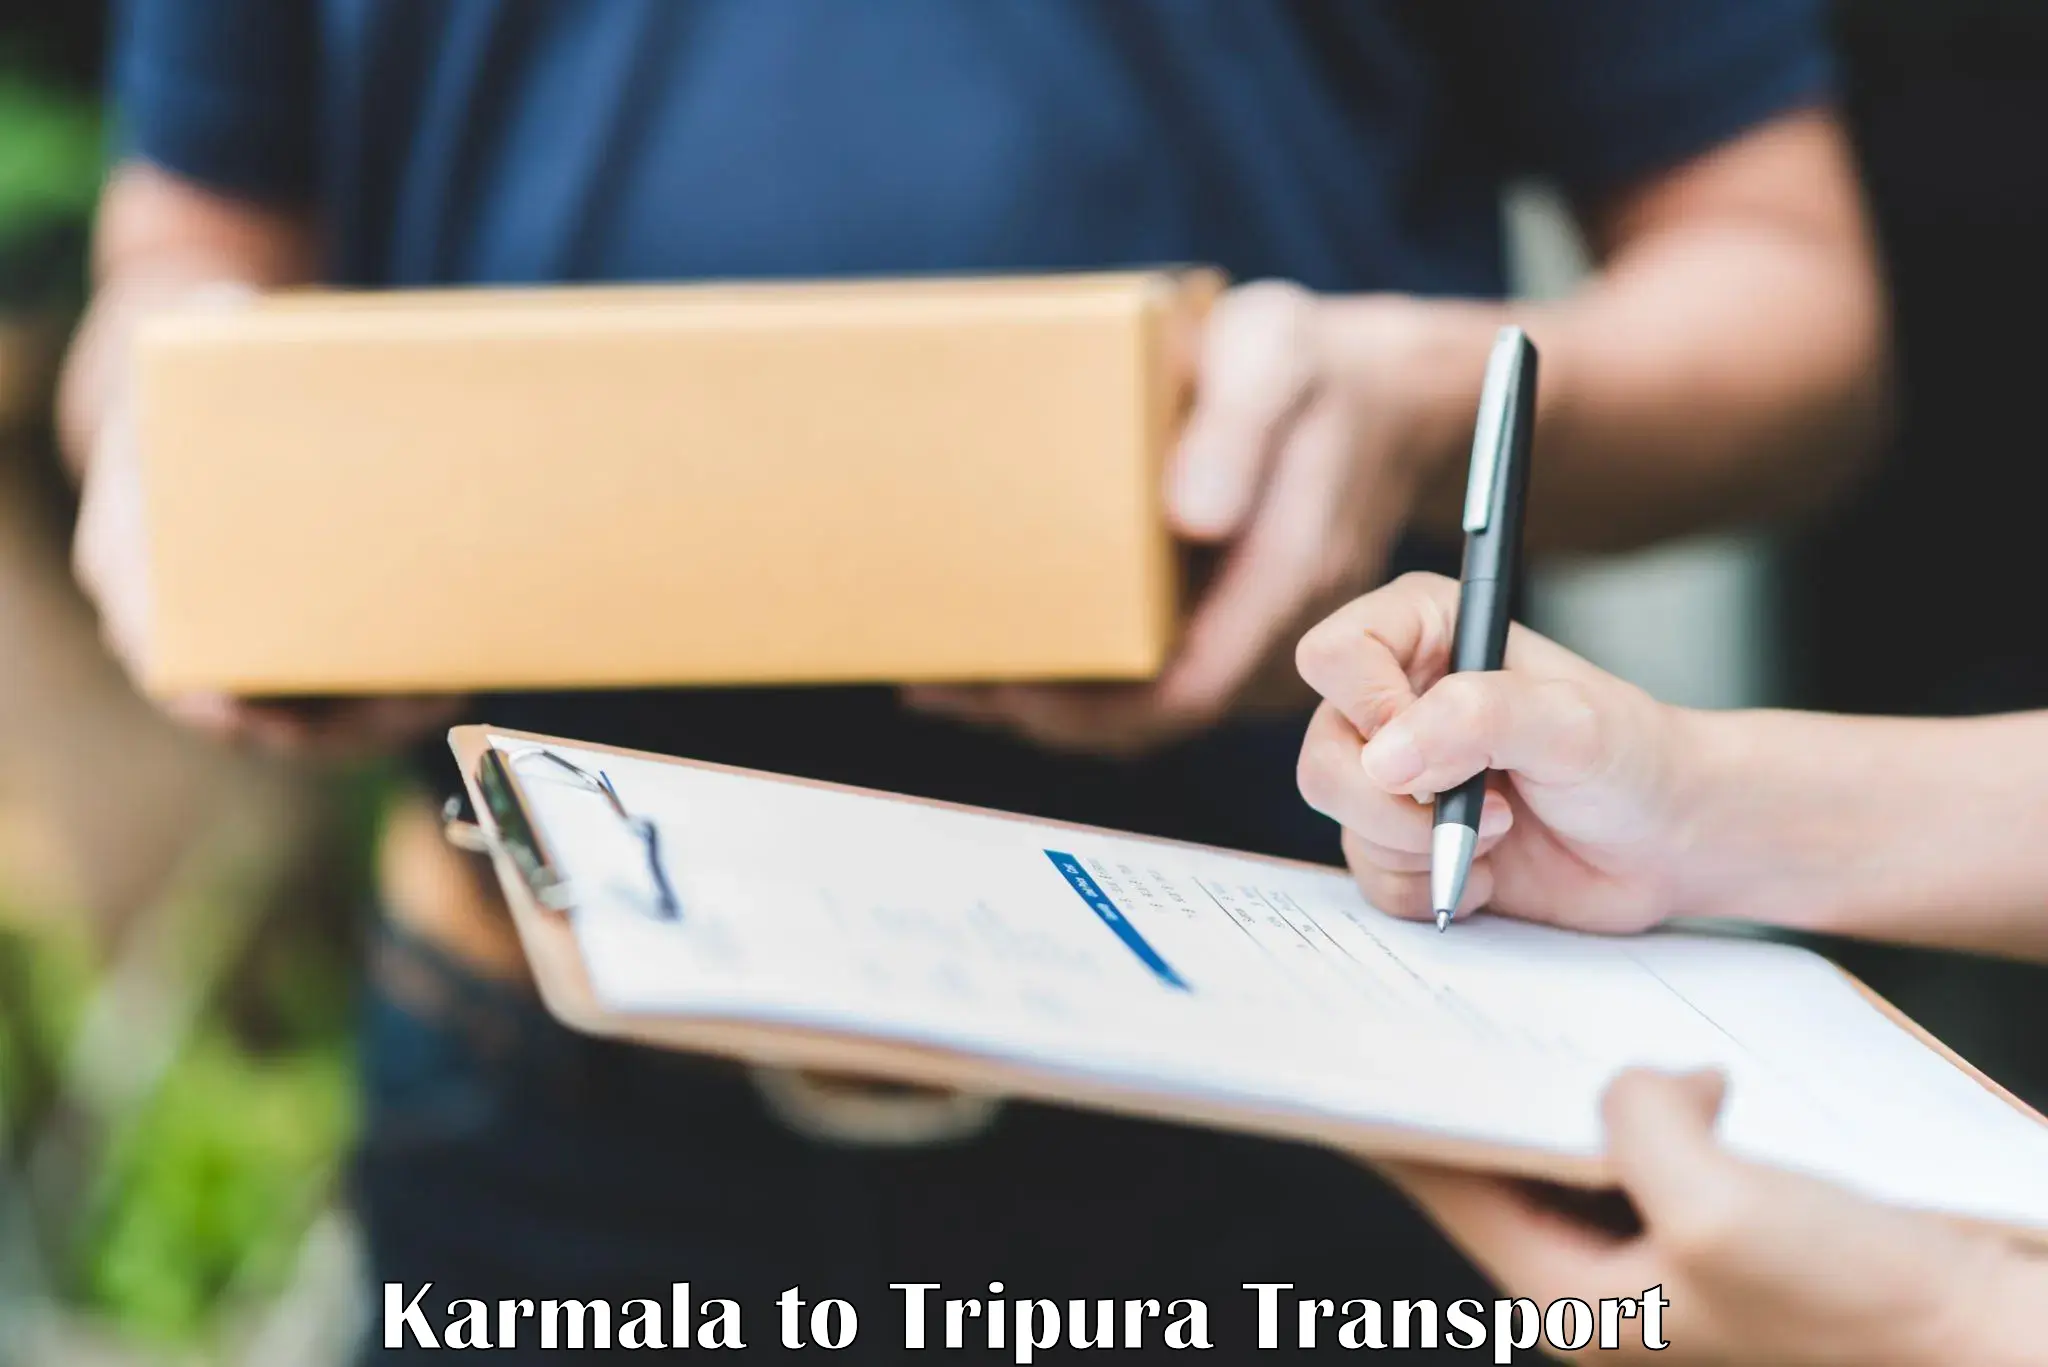 Daily transport service Karmala to West Tripura